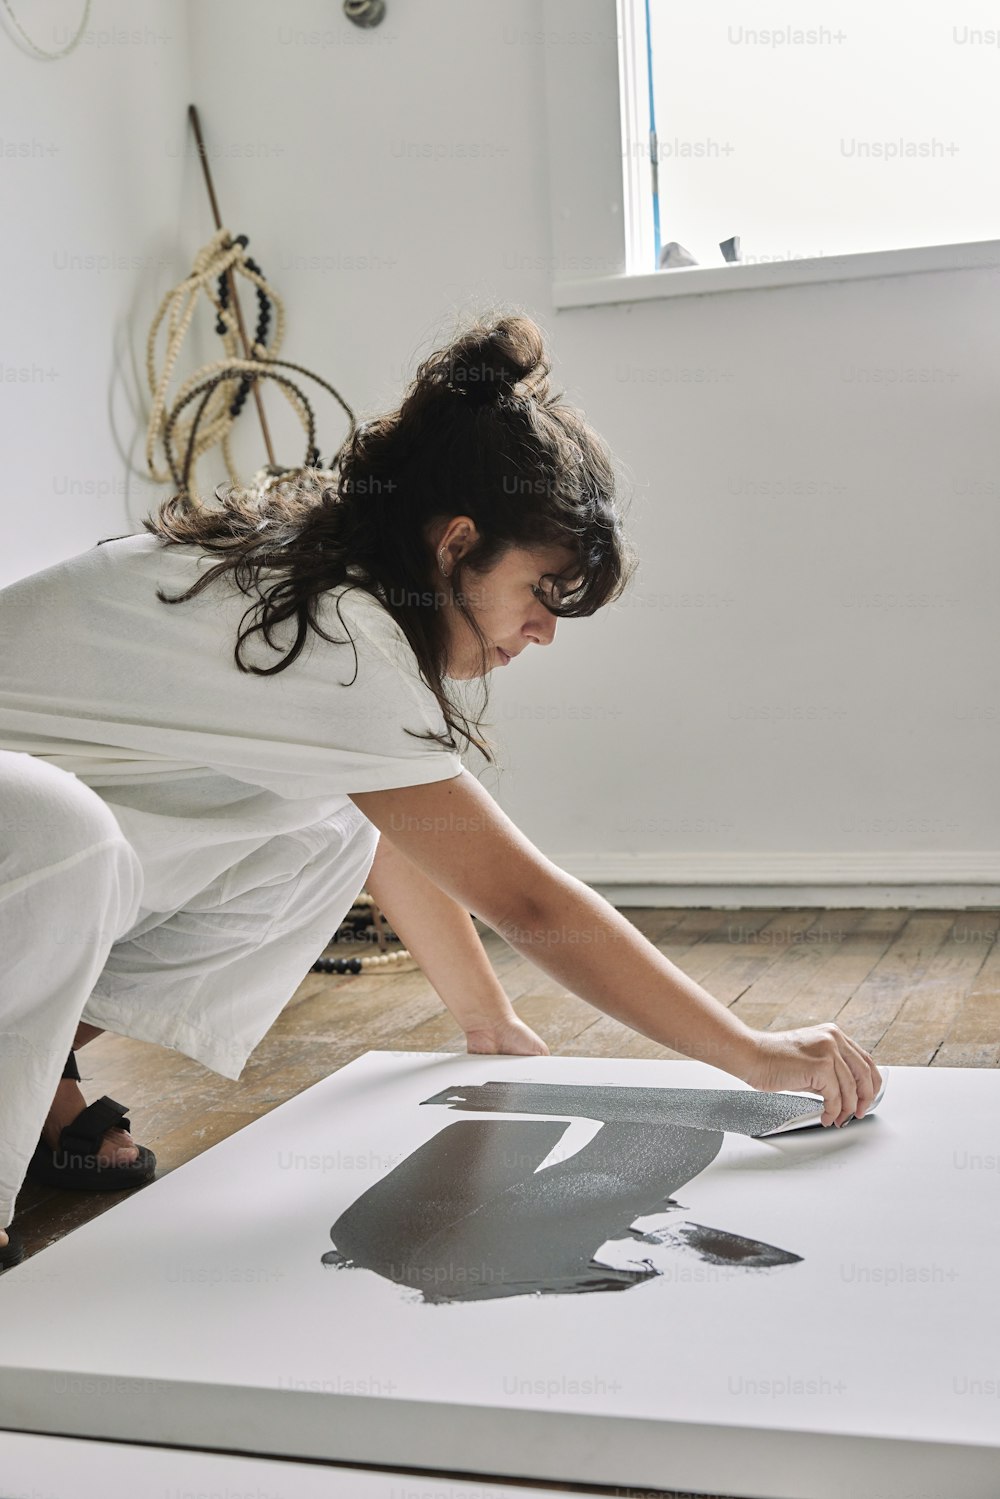 Una donna in un vestito bianco sta dipingendo un quadro